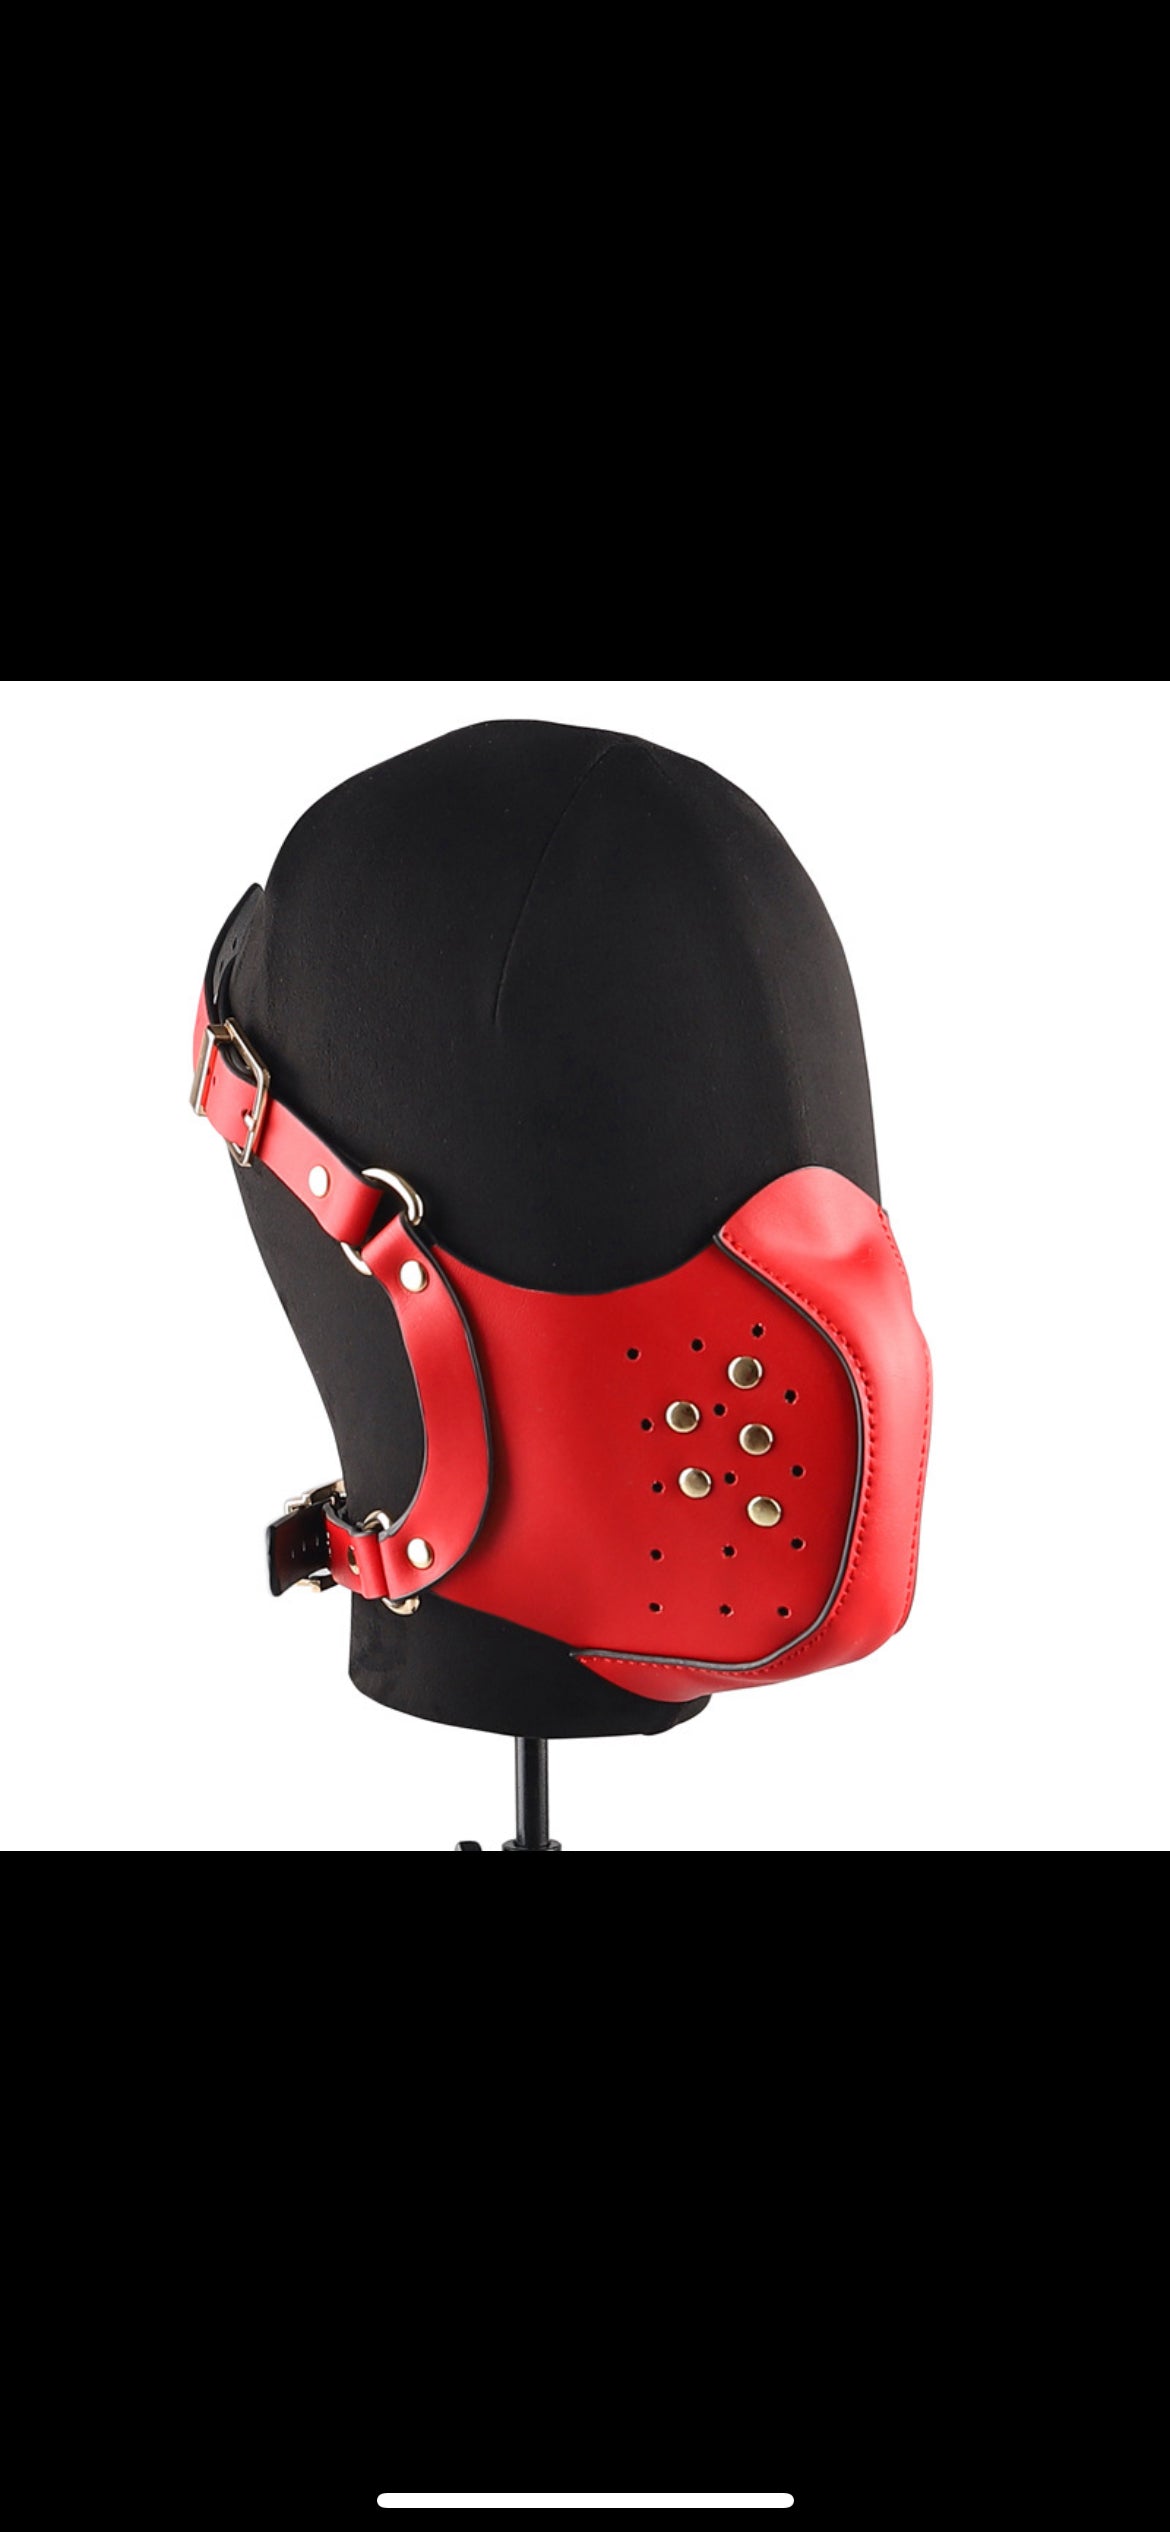 Lädermask - fetish- puppyplay - bdsm, ansiktsmask eller munkorg i äkta läder. Finns i svart och rött